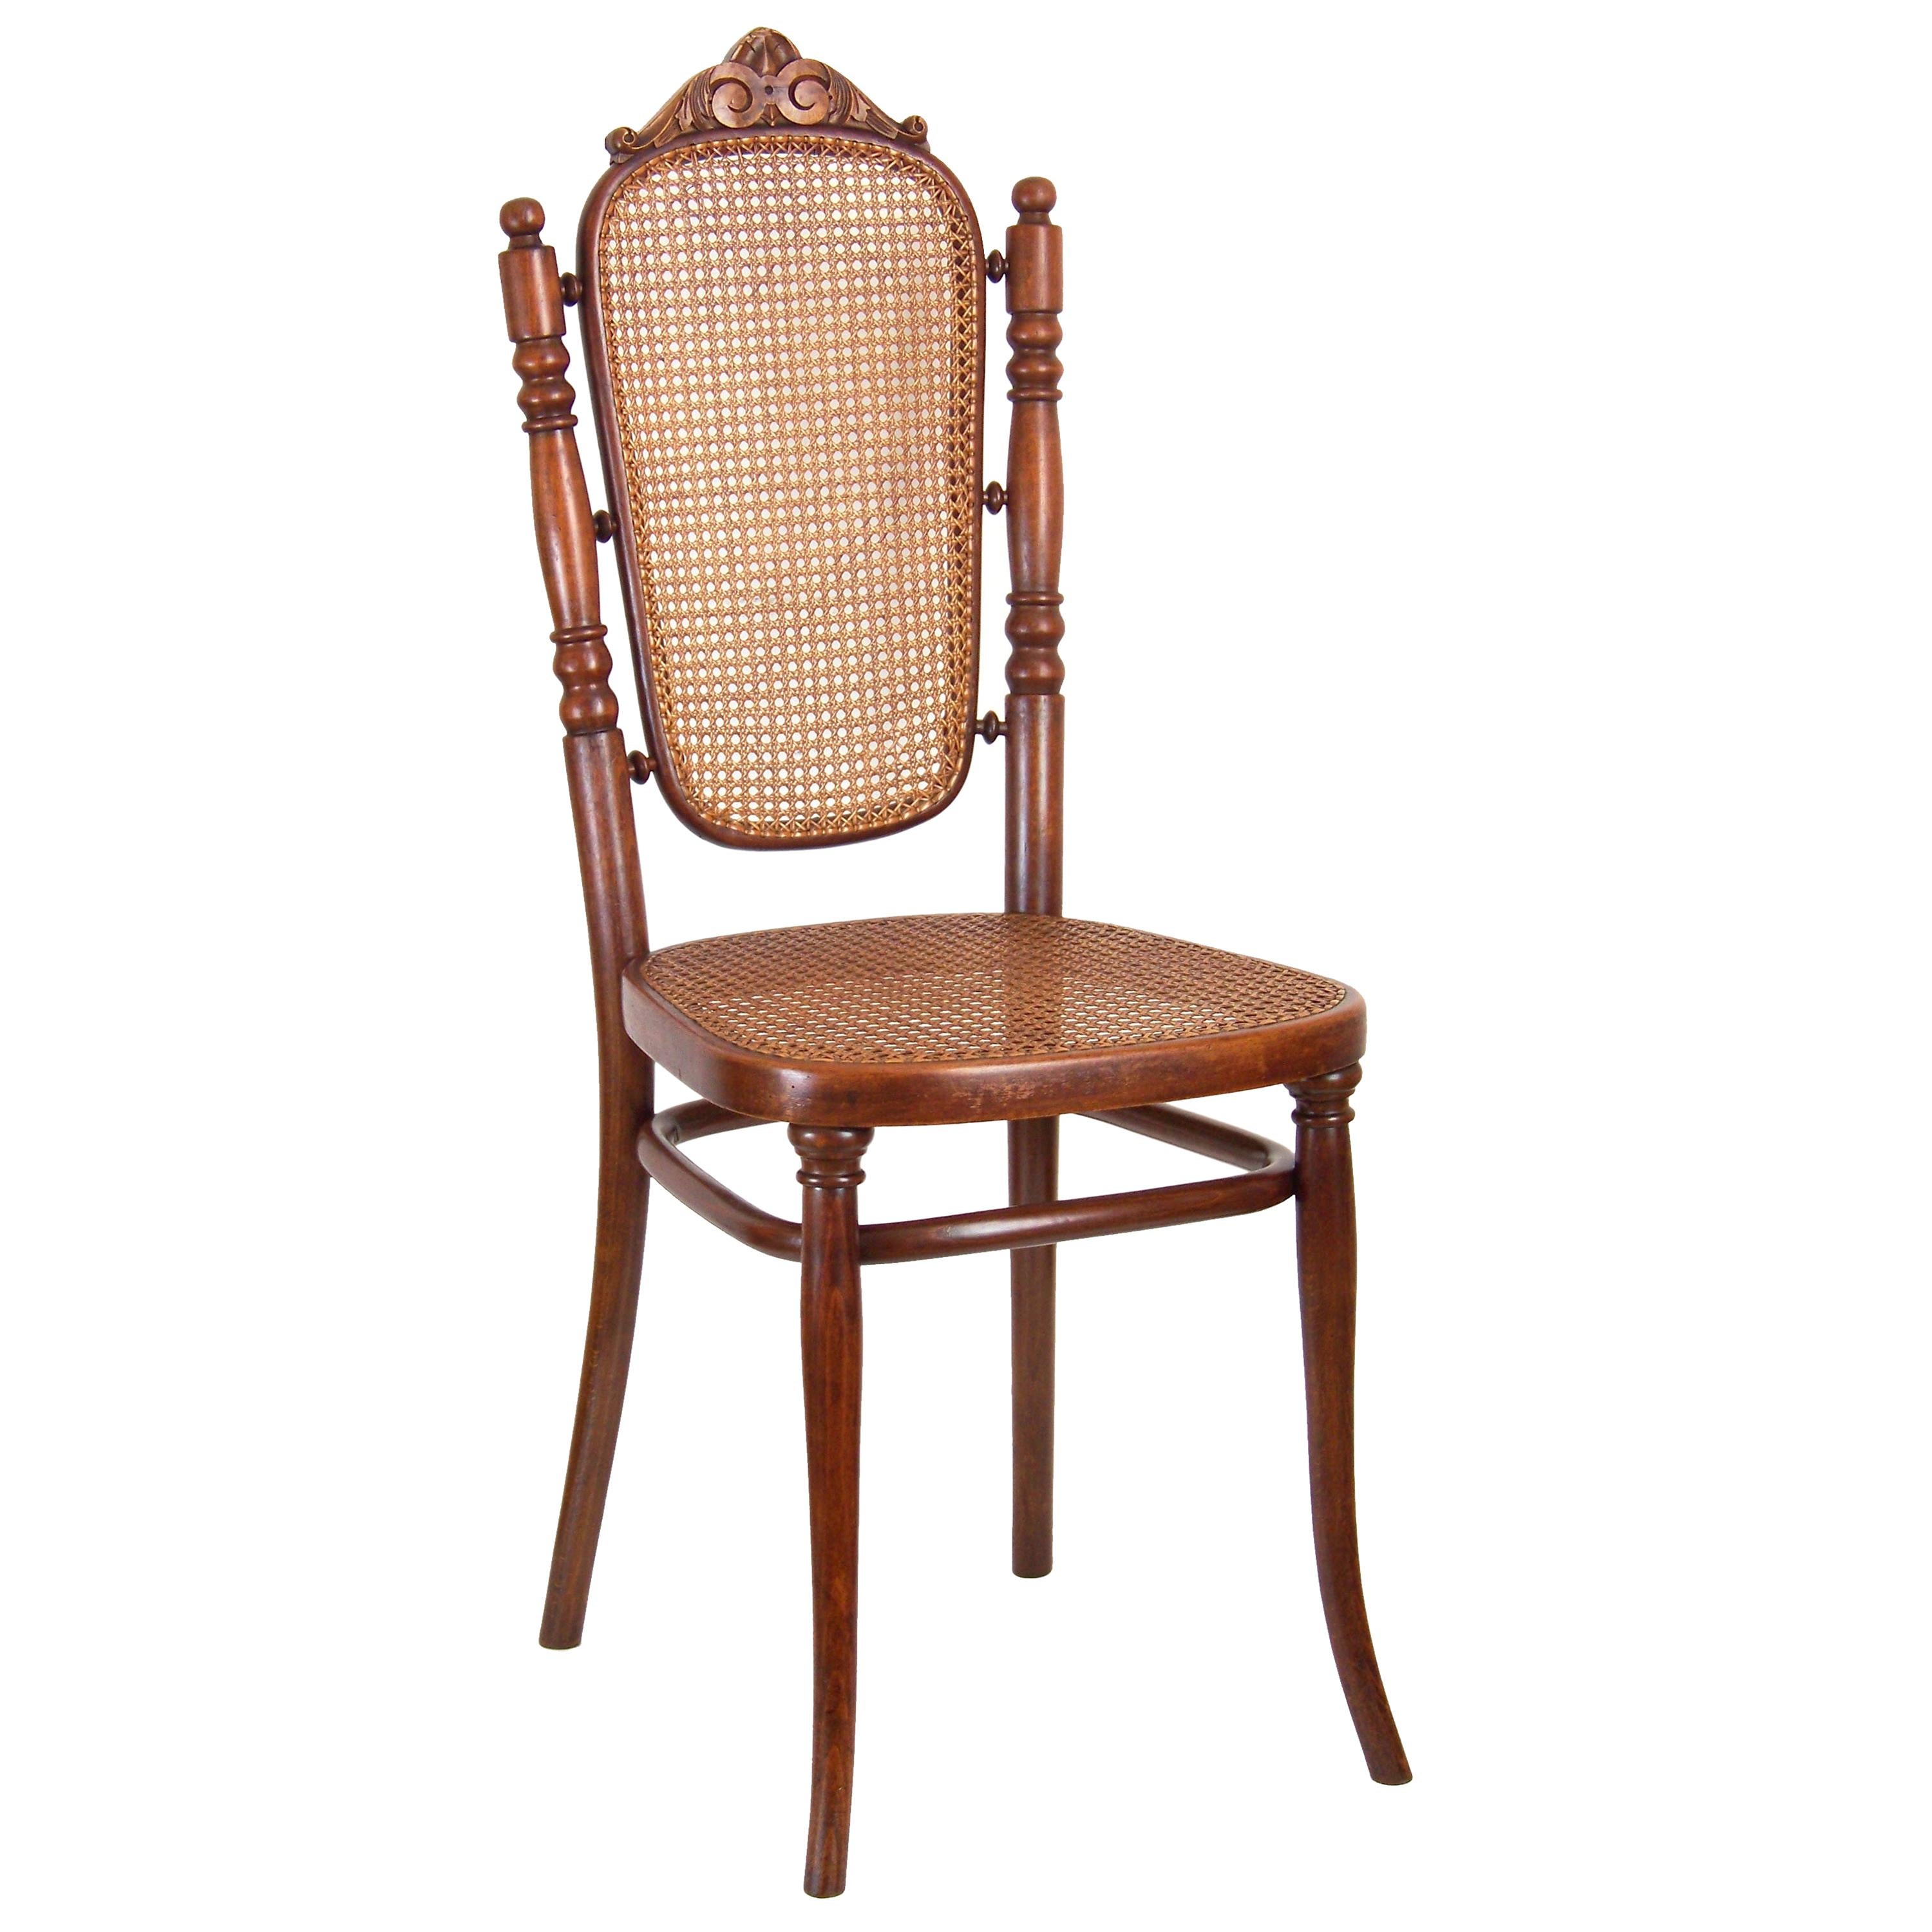 Chair Thonet Nr. 183, since 1895